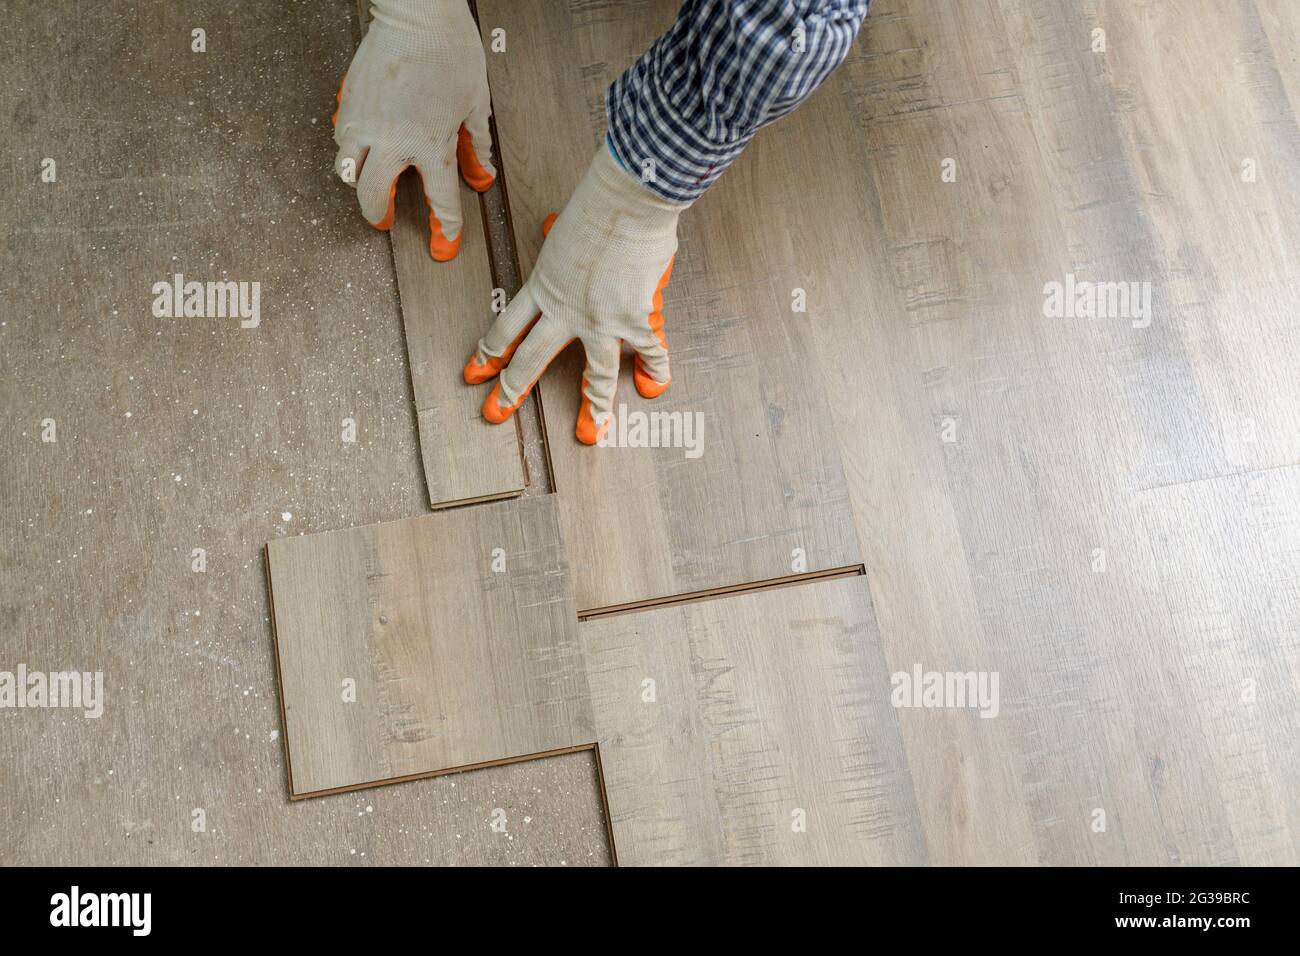 Home Fliesen Verbesserung - Handwerker mit Level.Tiler arbeitet mit Bodenbelag Stockfoto